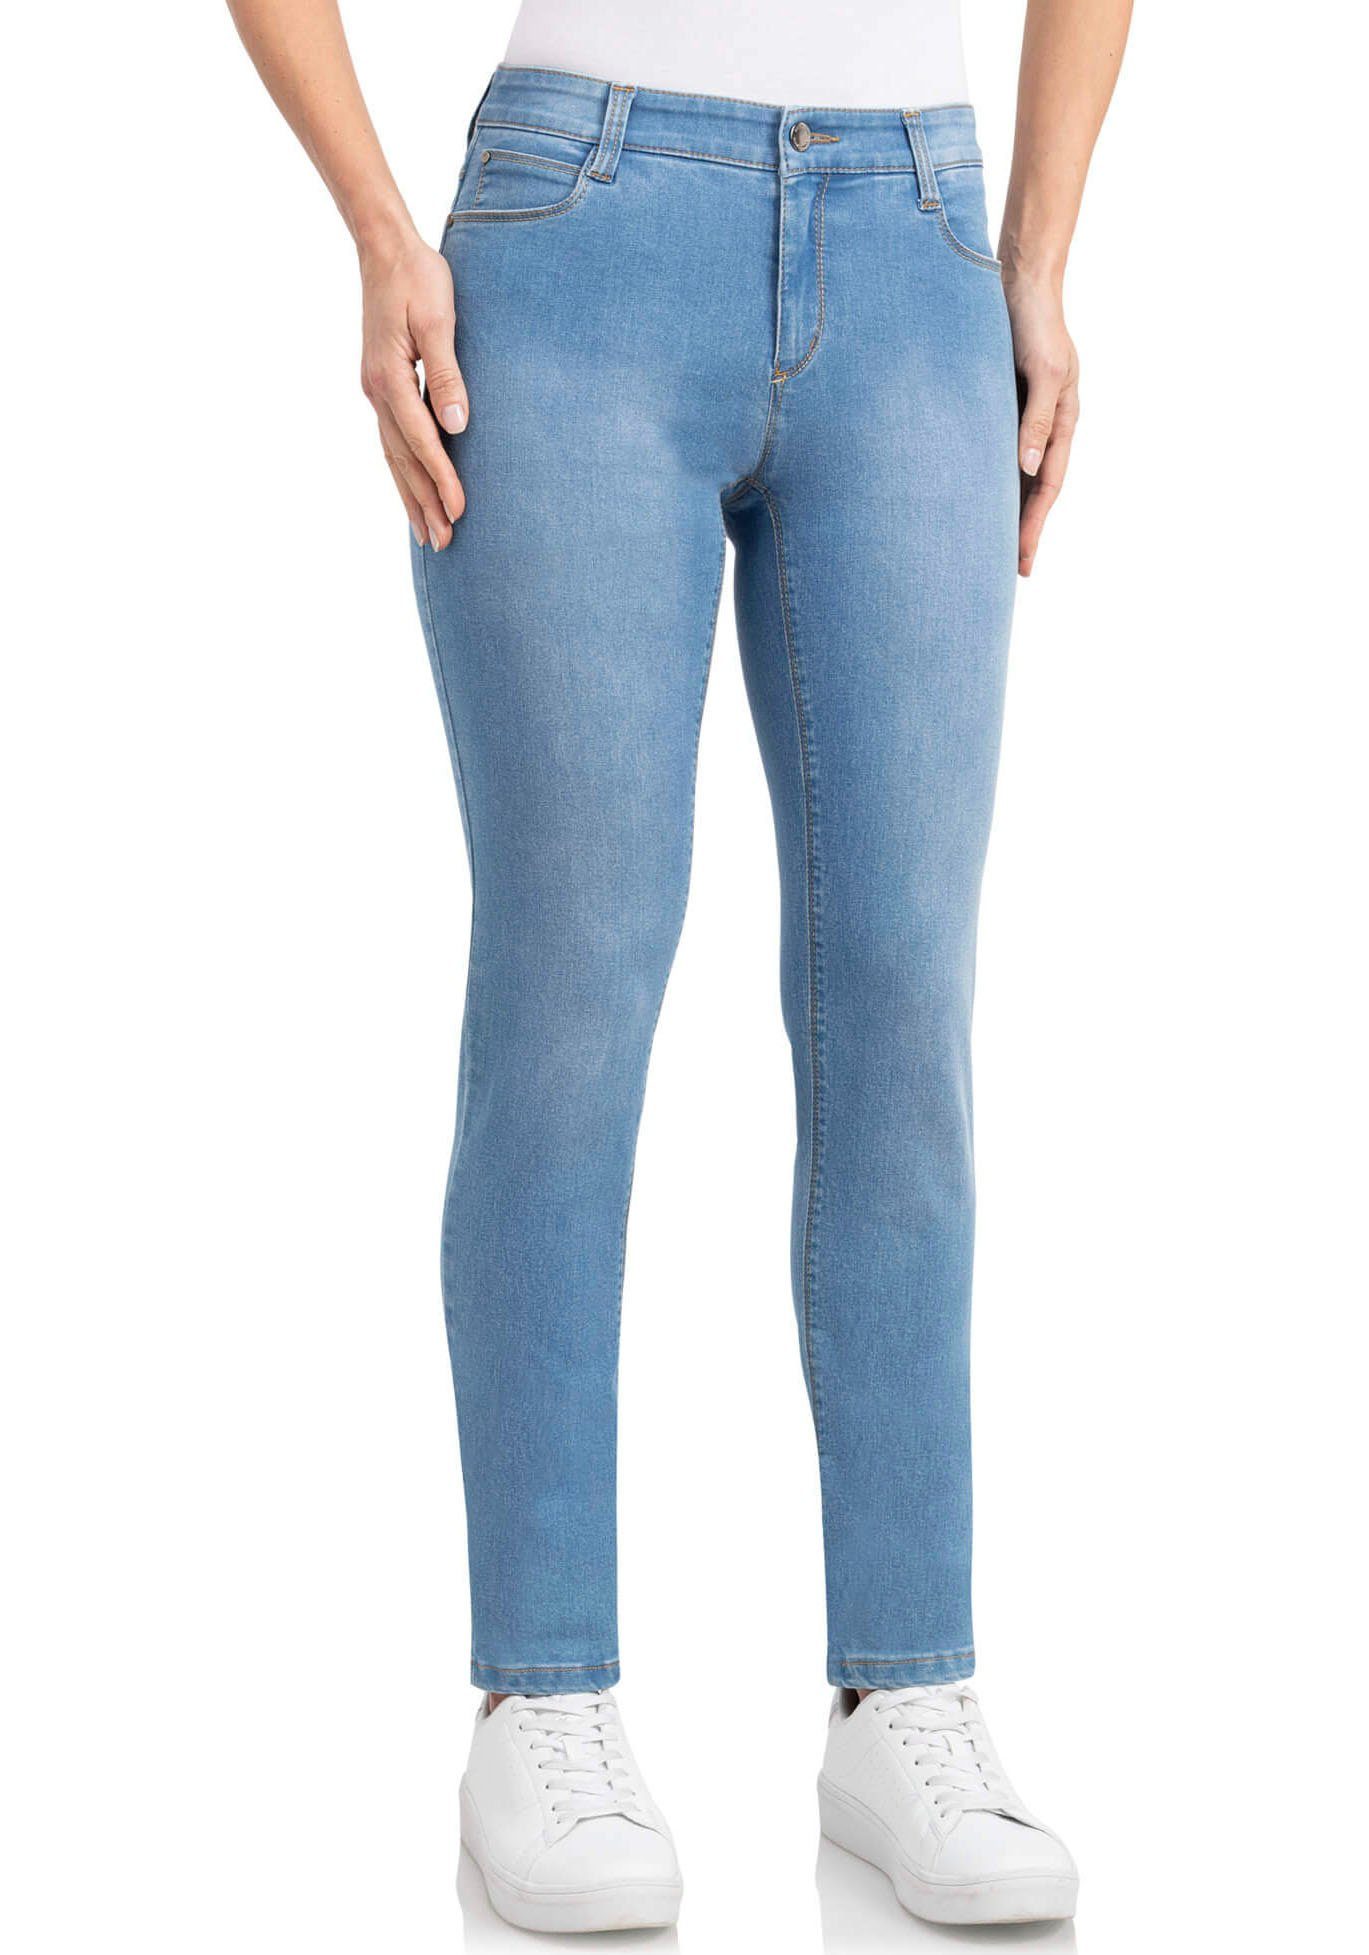 für Damen wunderwerk kaufen OTTO | Jeans online